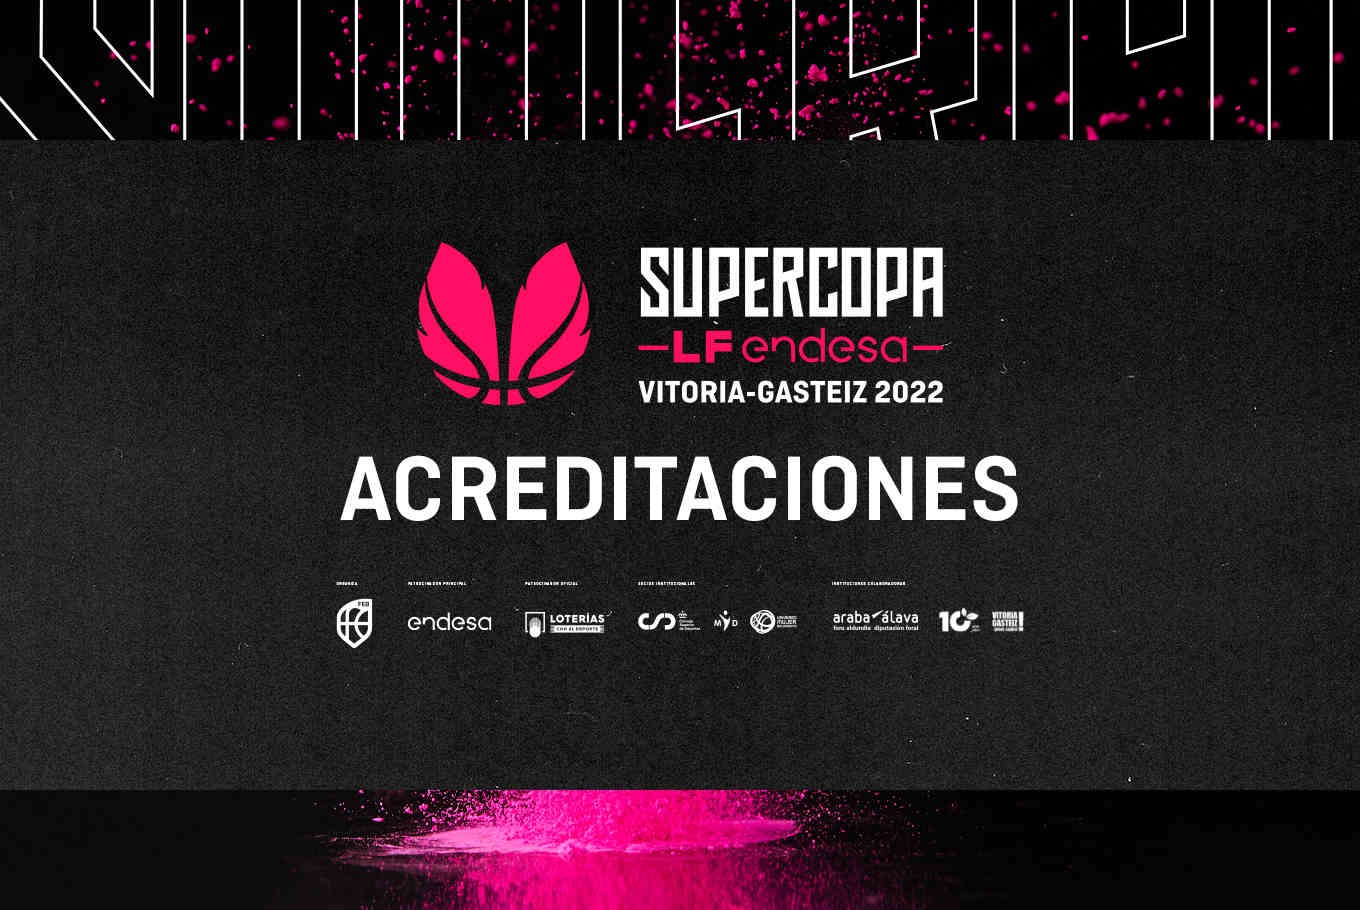 Acreditaciones Supercopa LF Endesa 2022